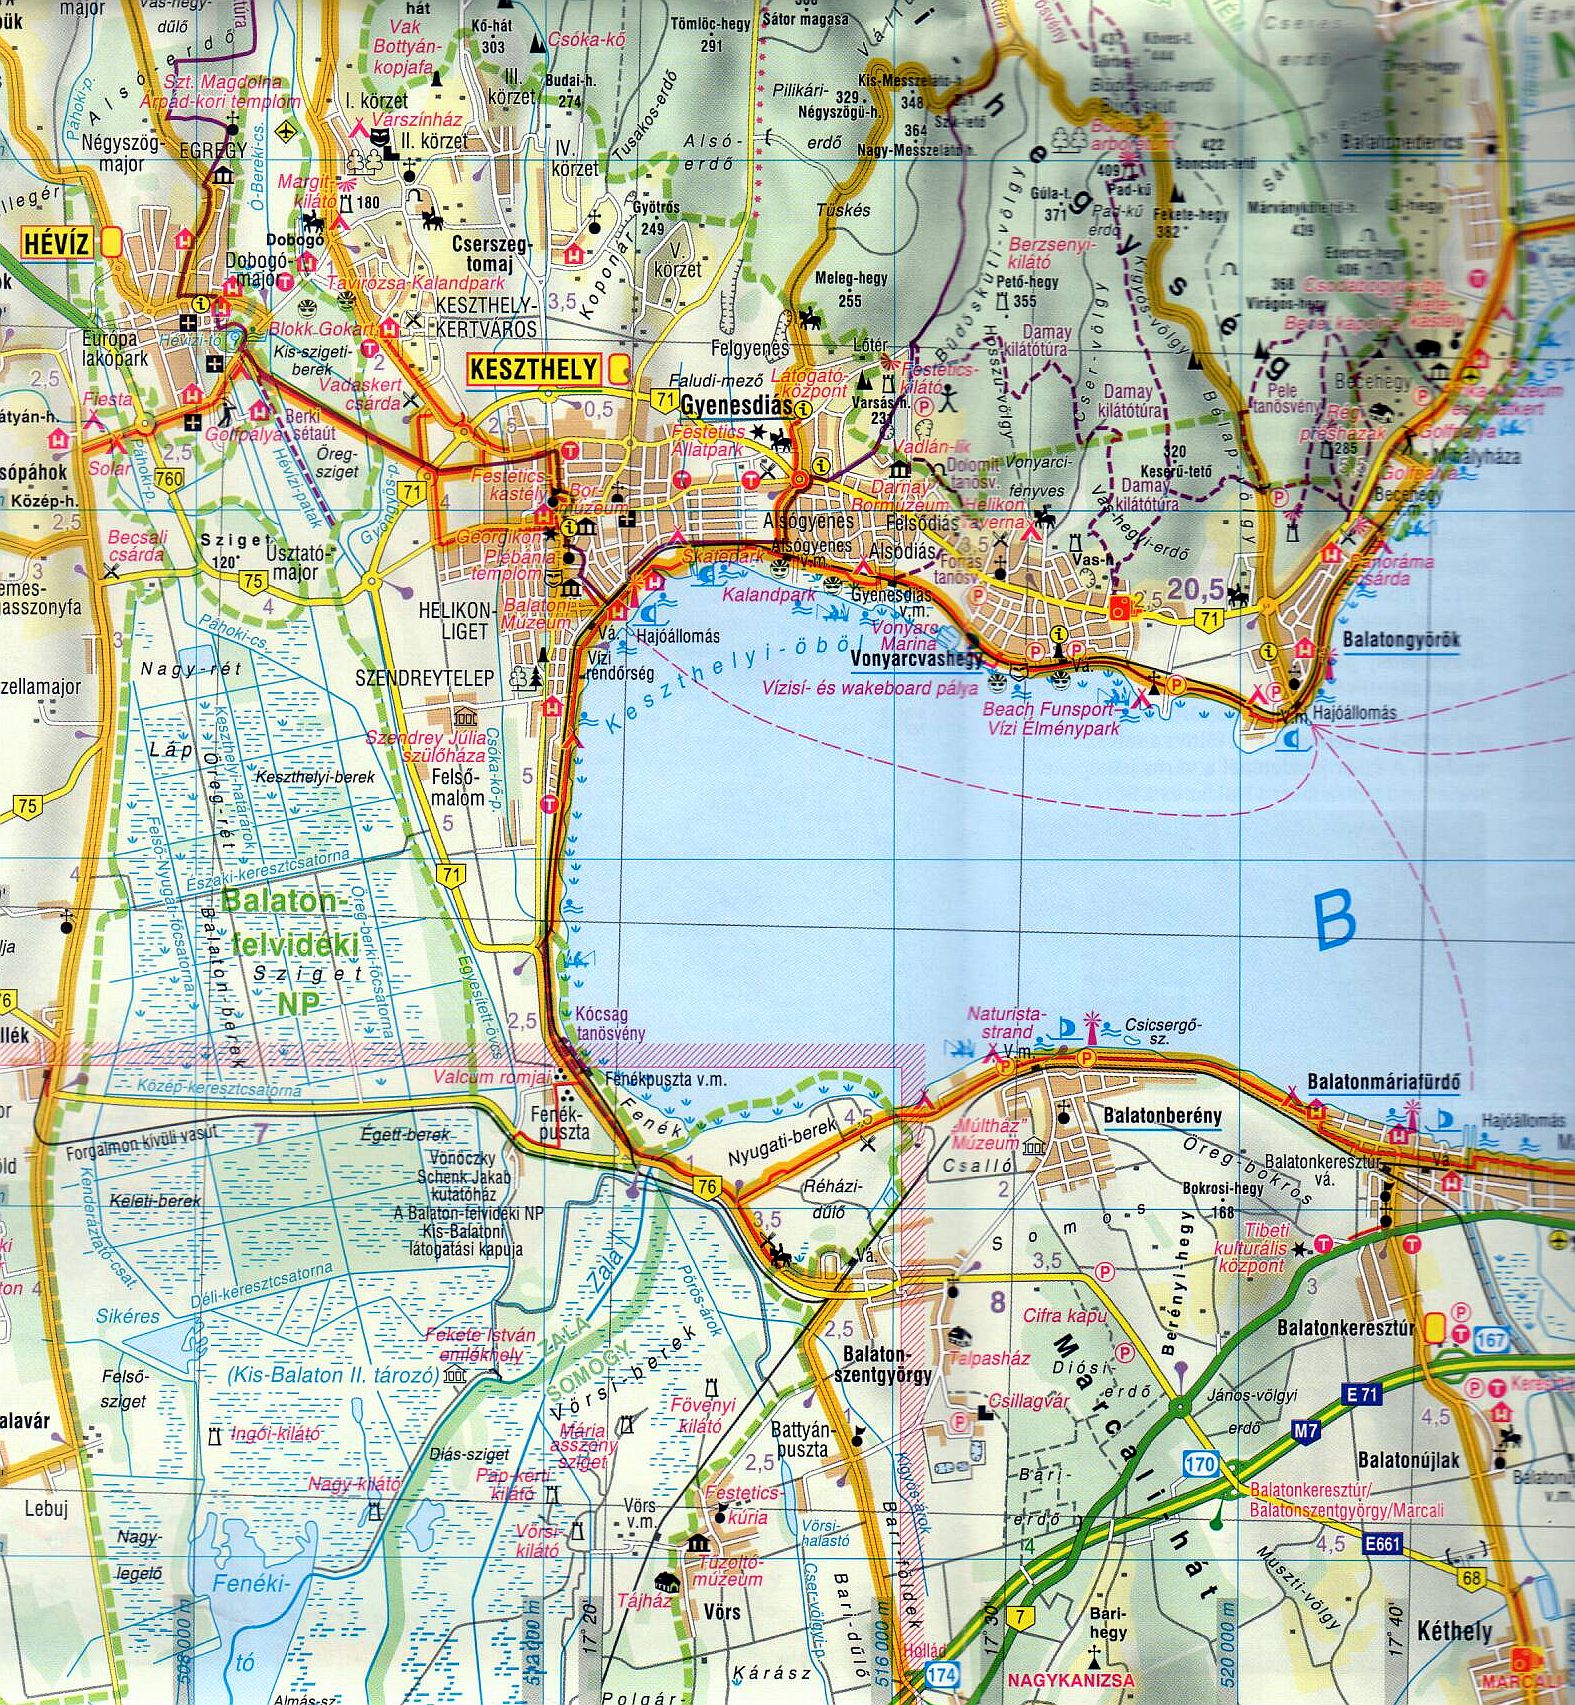 Balaton leisure time map: sample 1:90.000